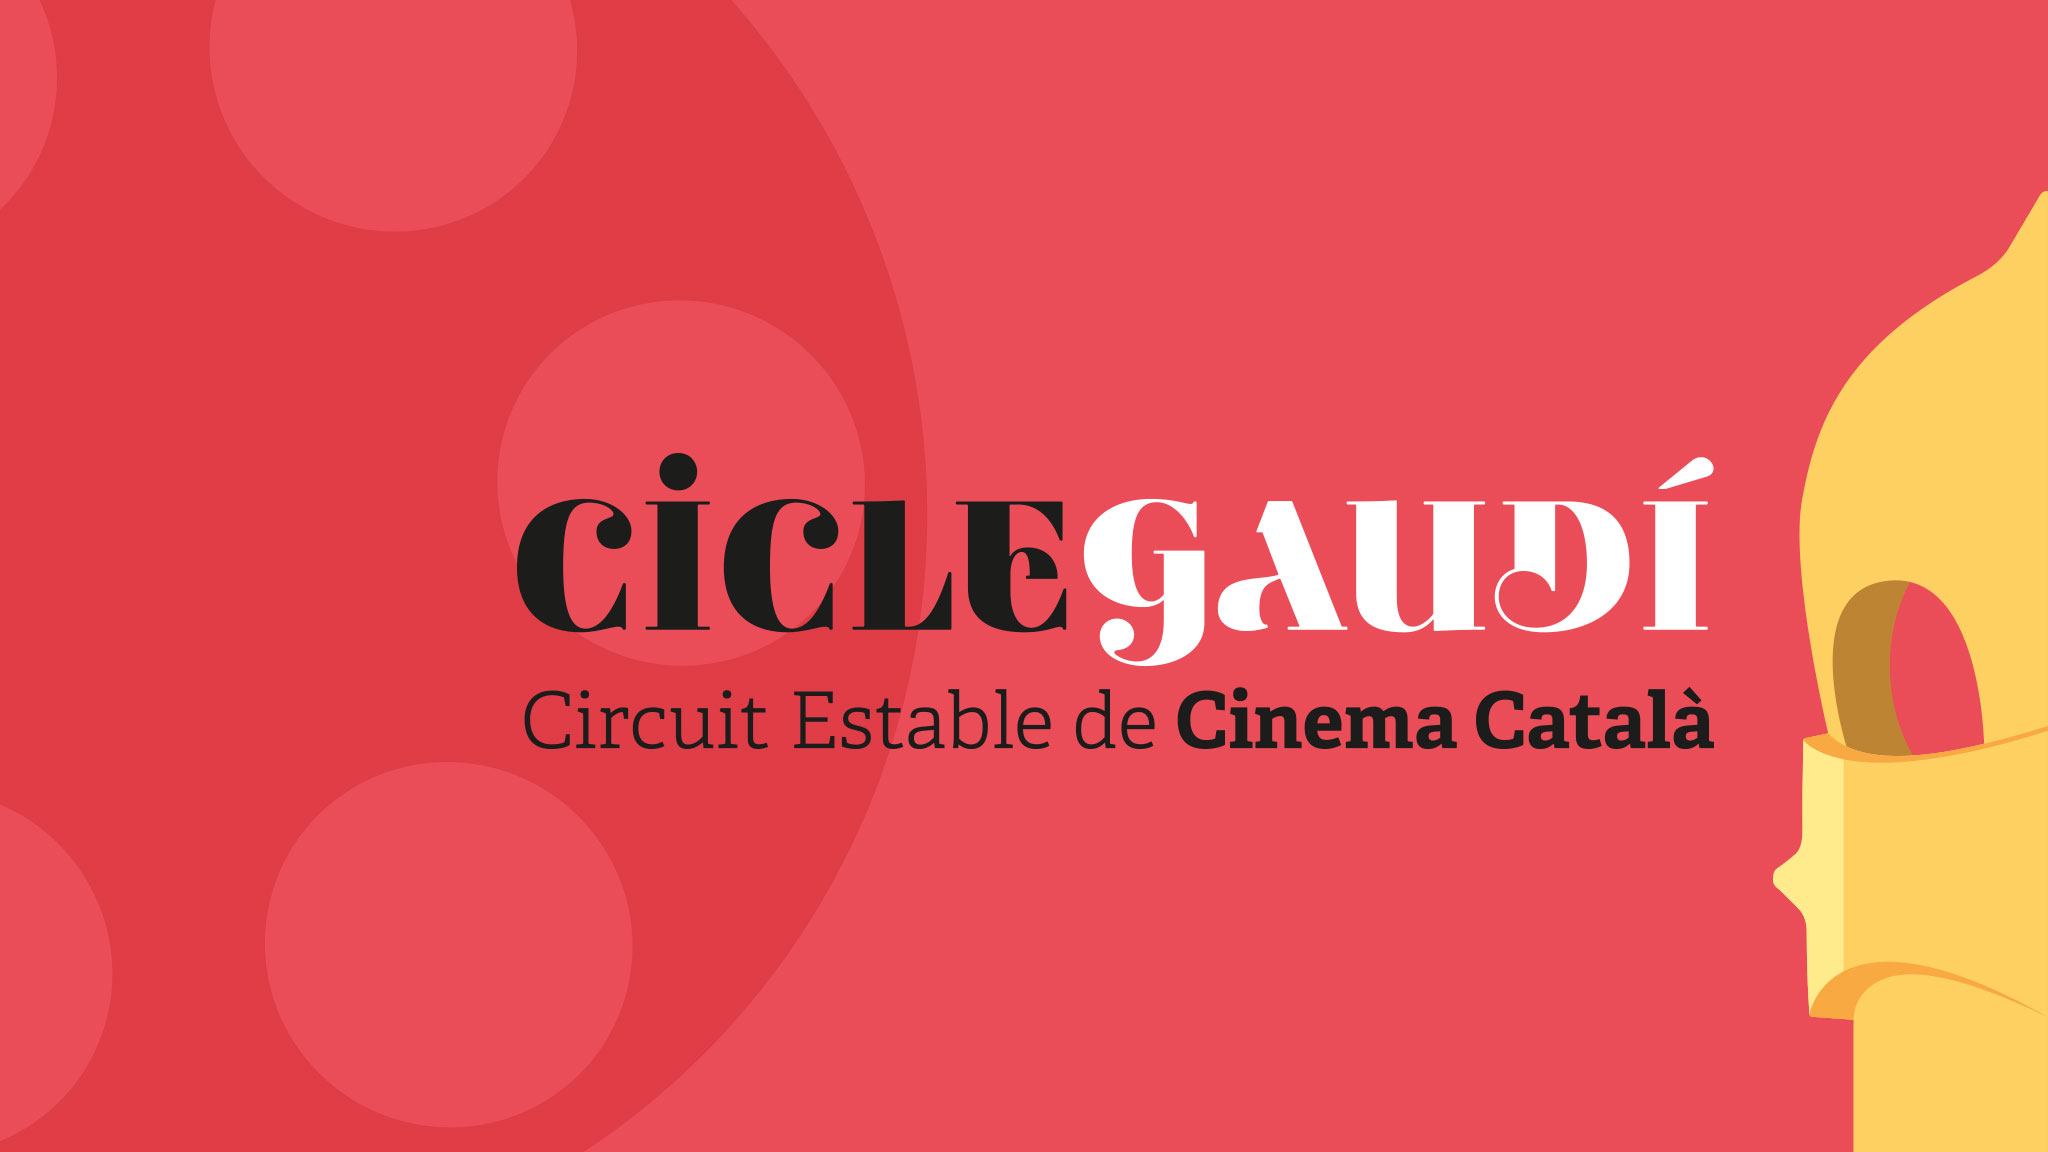 (c) Ciclegaudi.cat